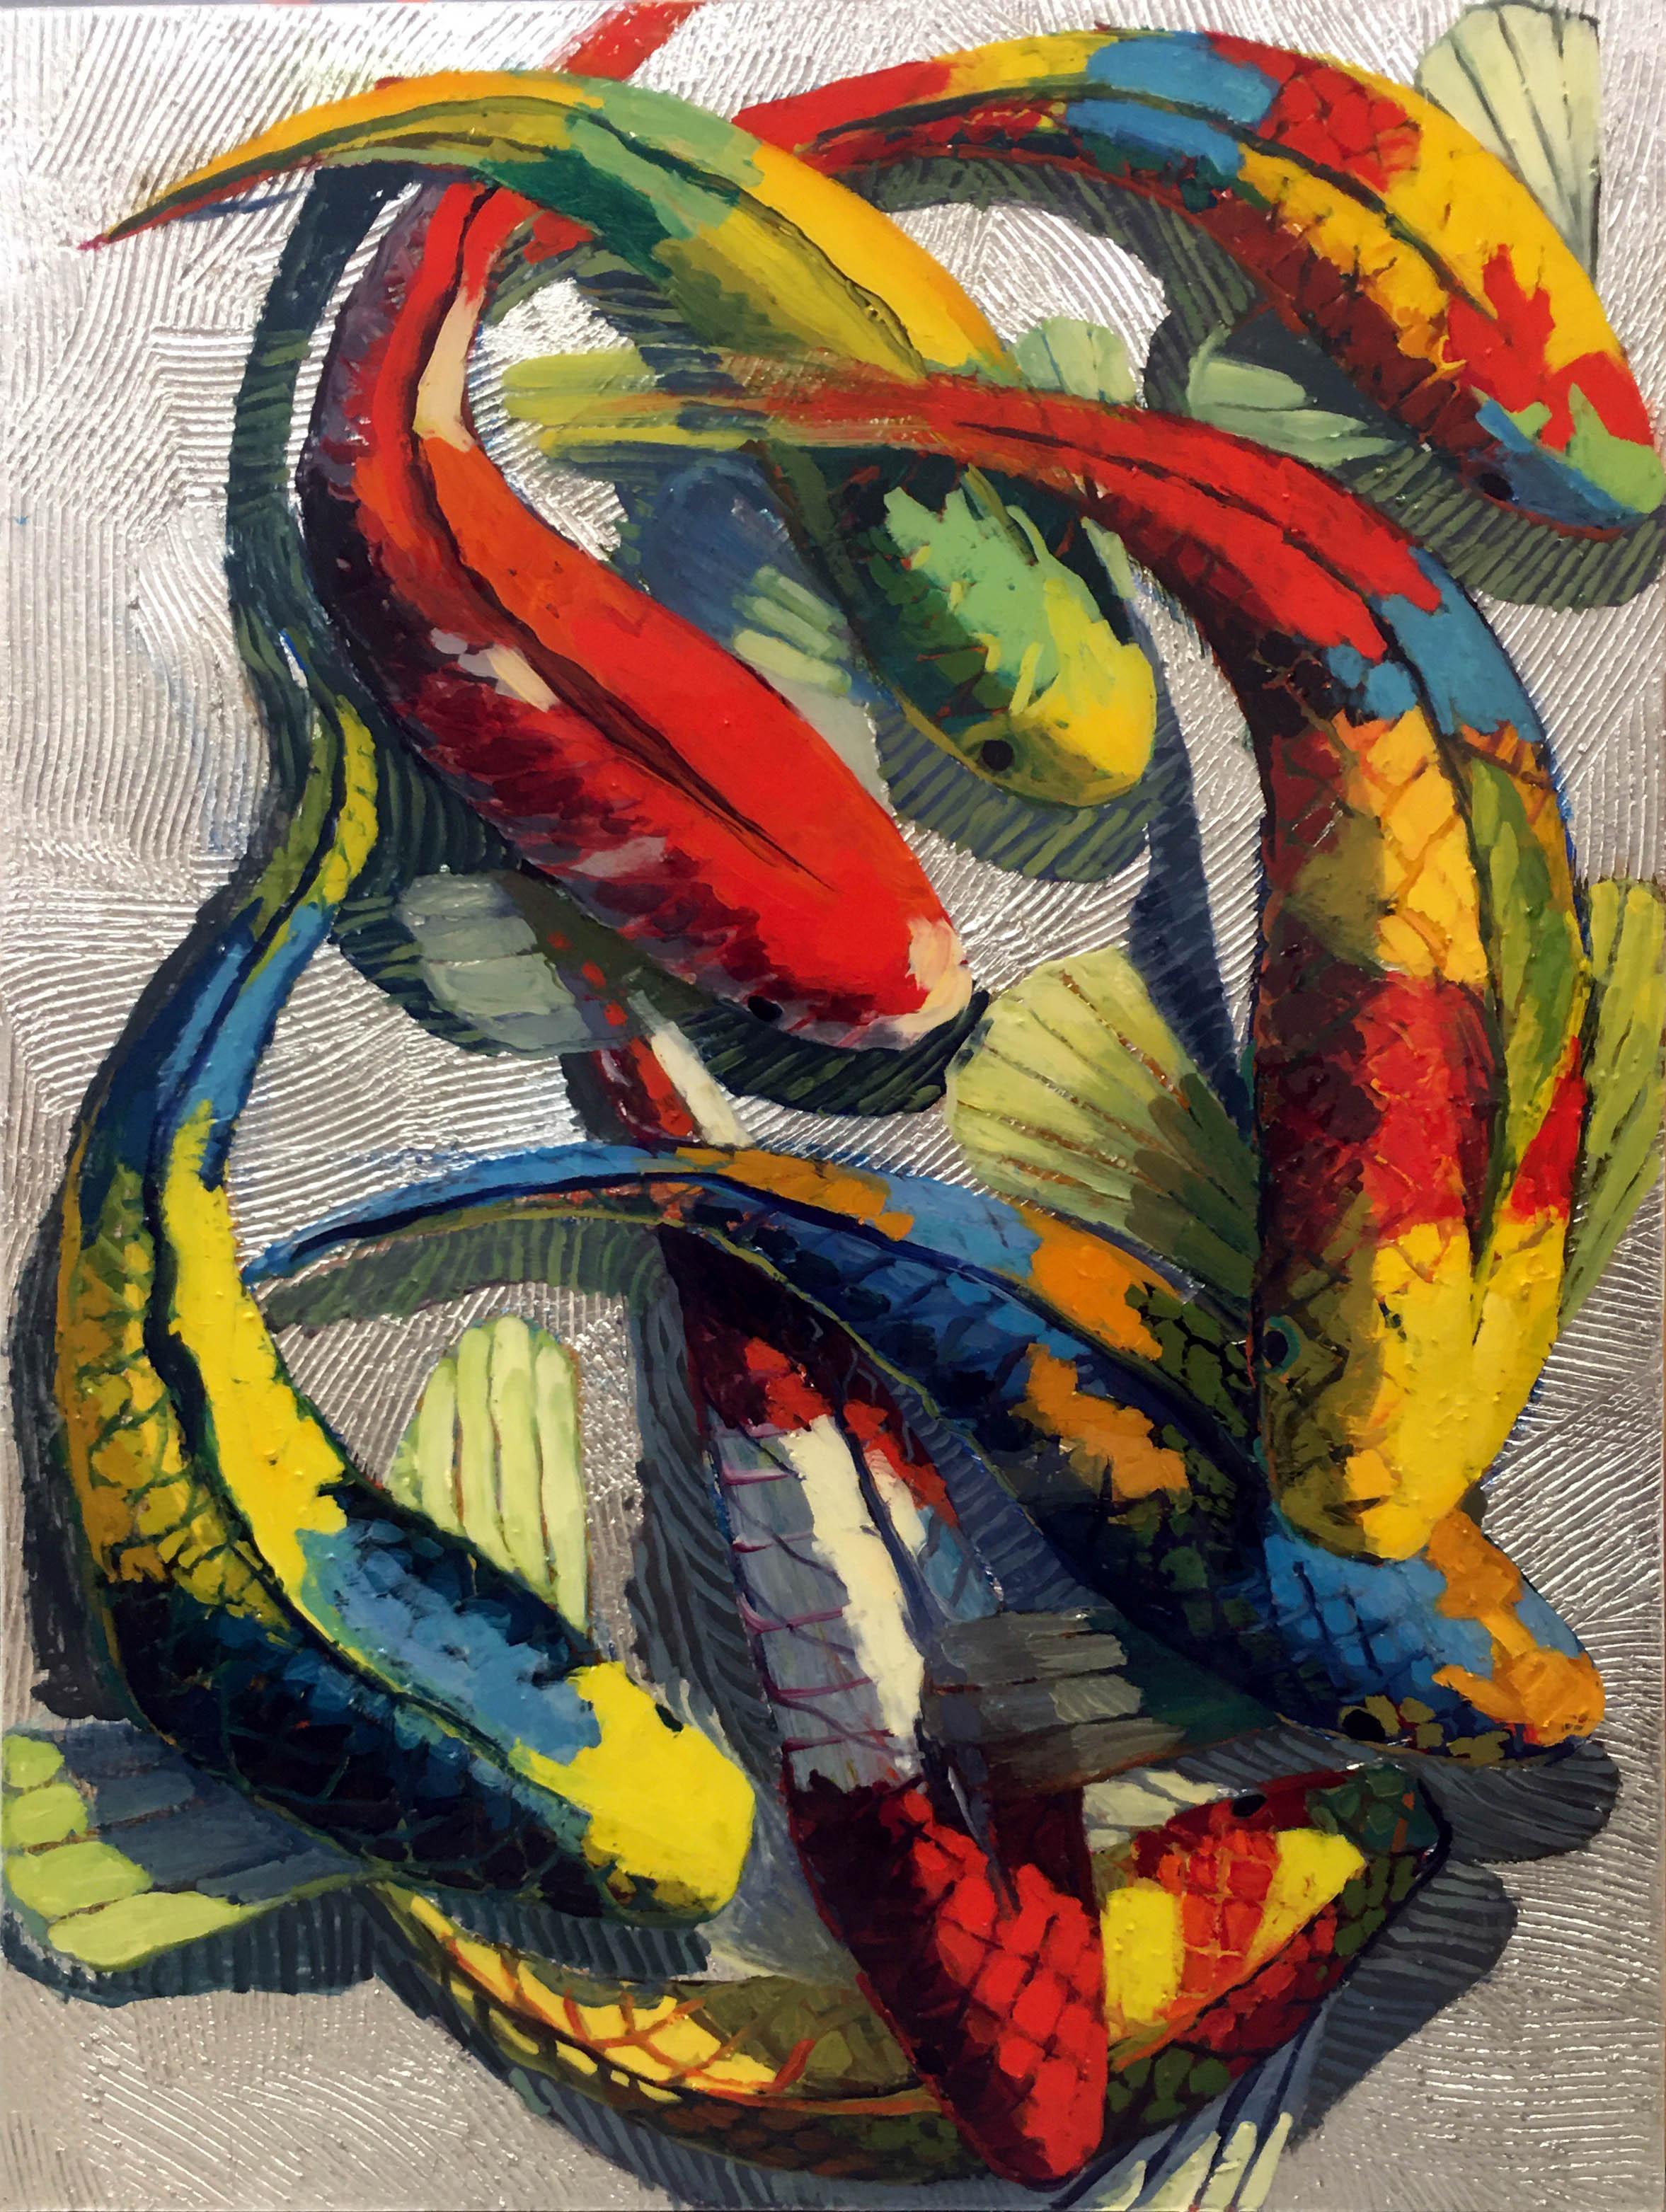 Danse serpentine - Koi bleu et jaune sur argent 48 x 36